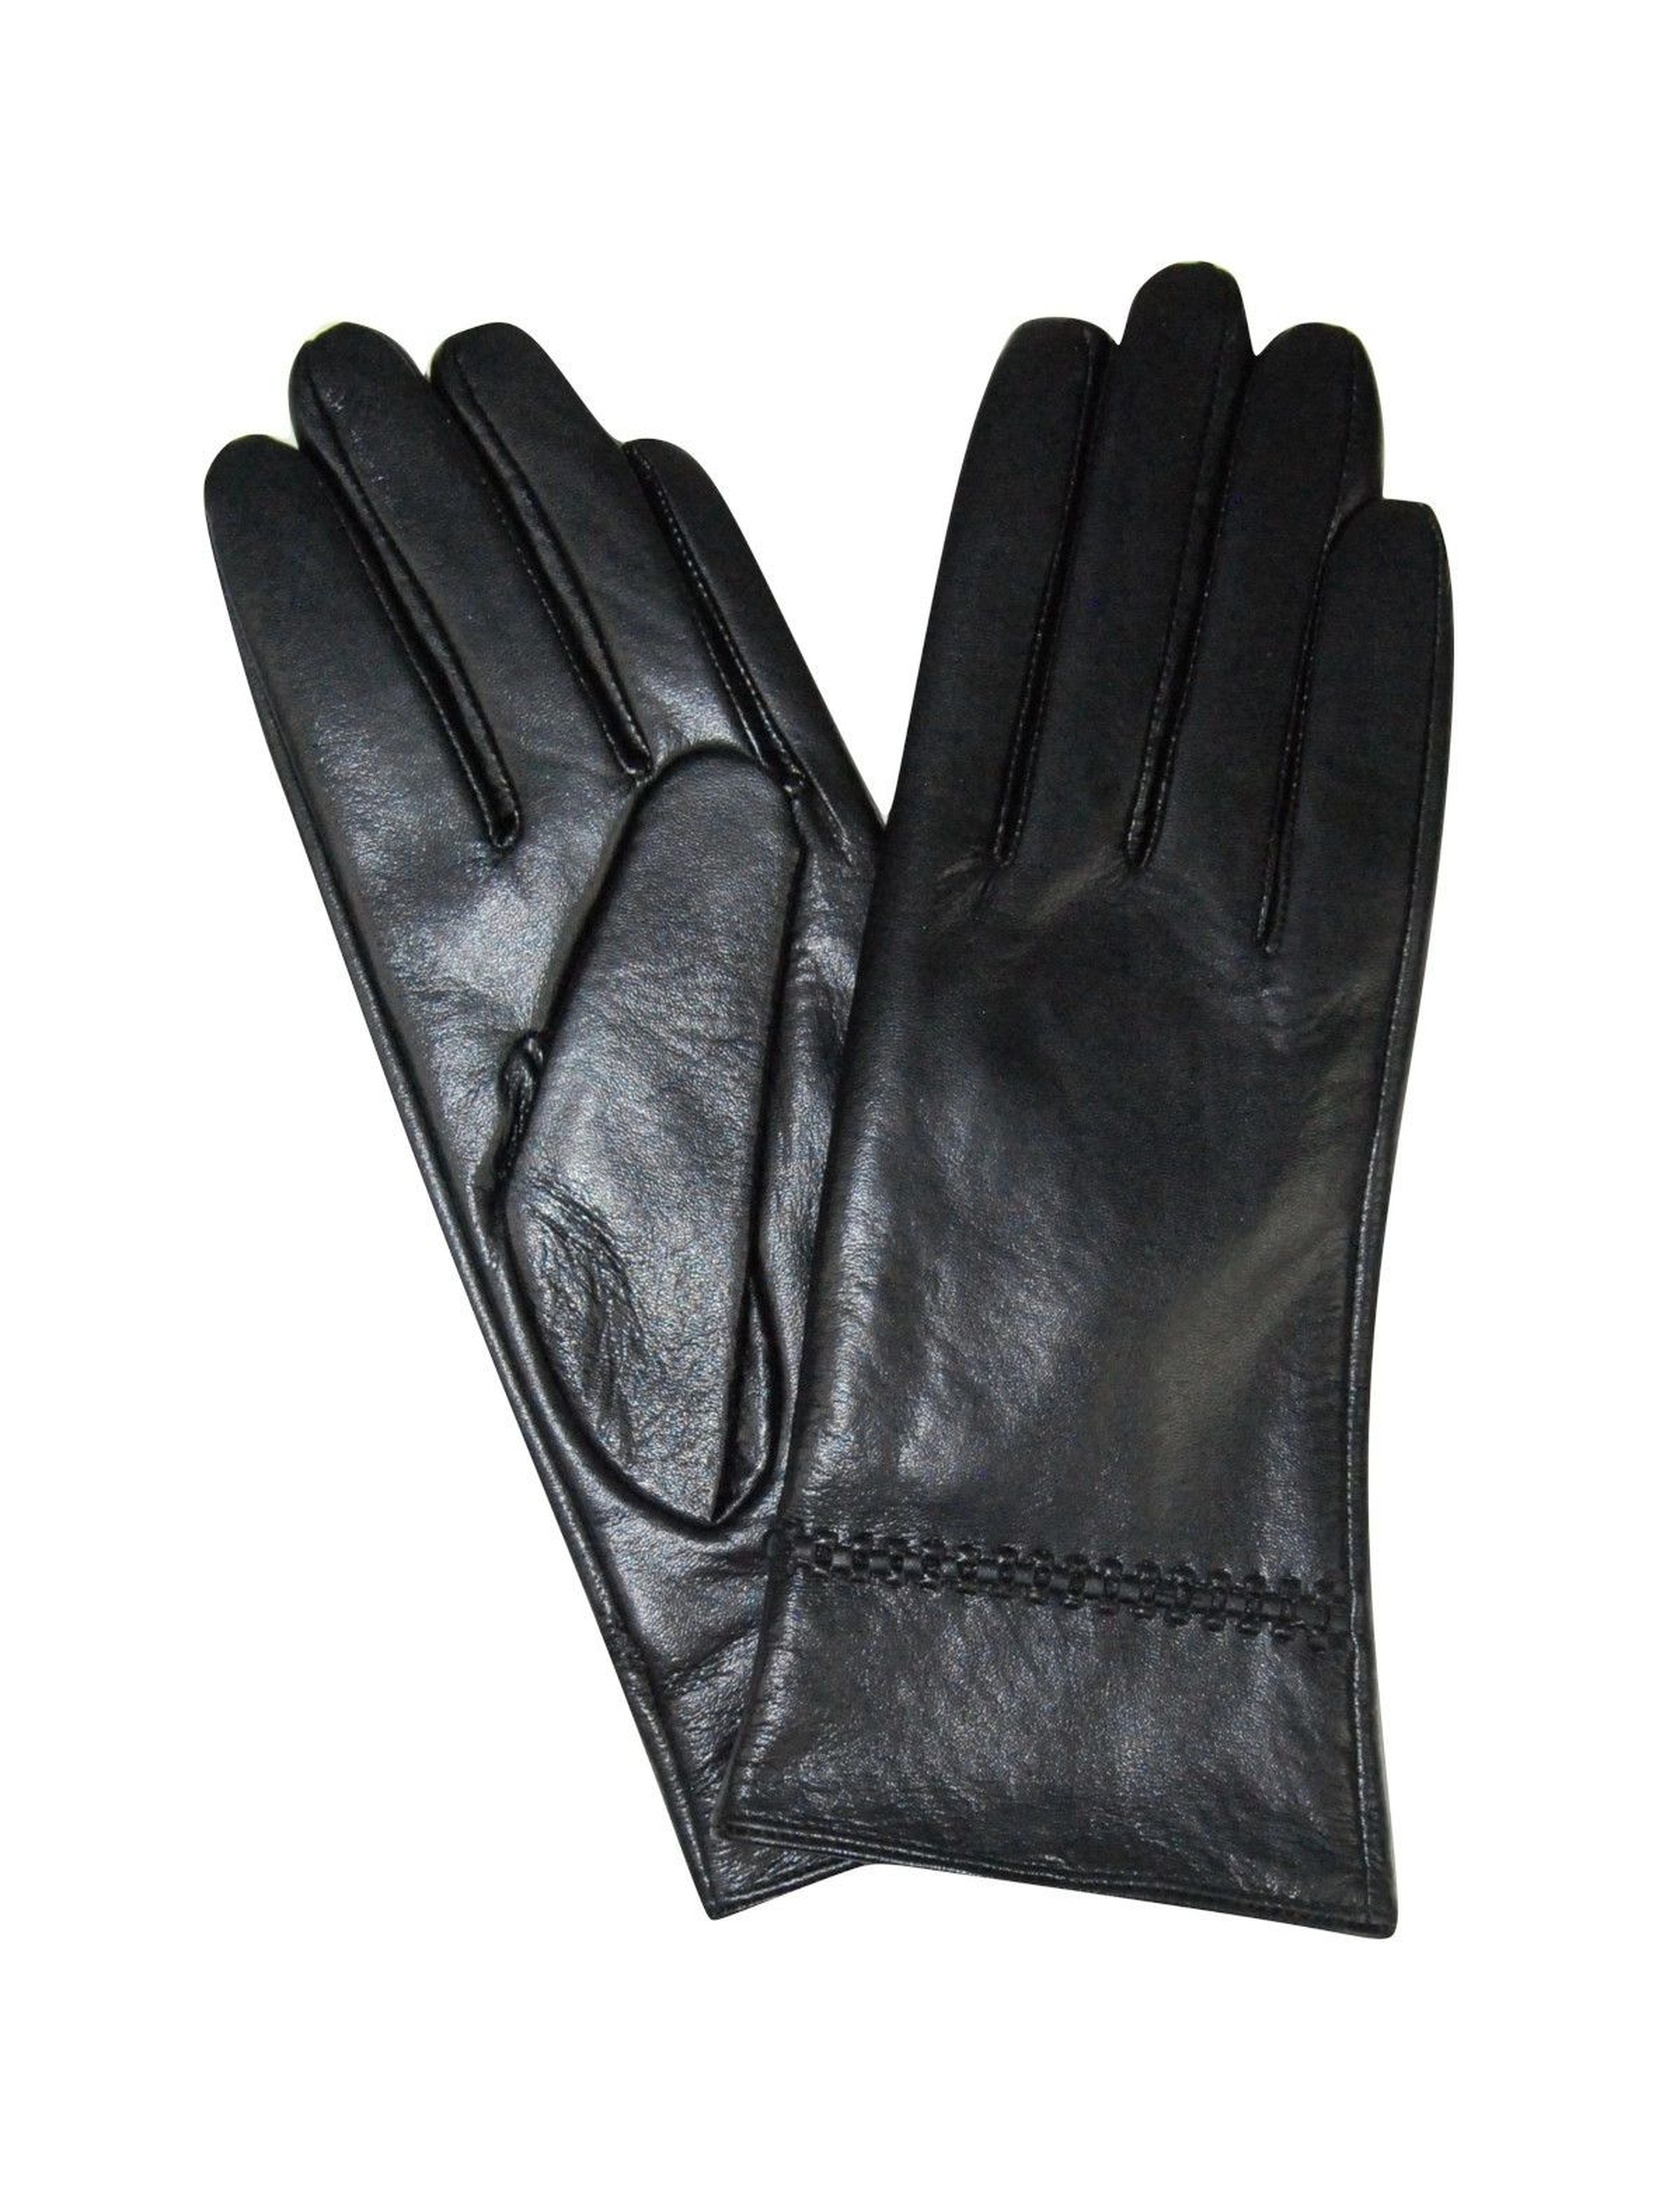 Rękawiczki damskie skórzane - czarne